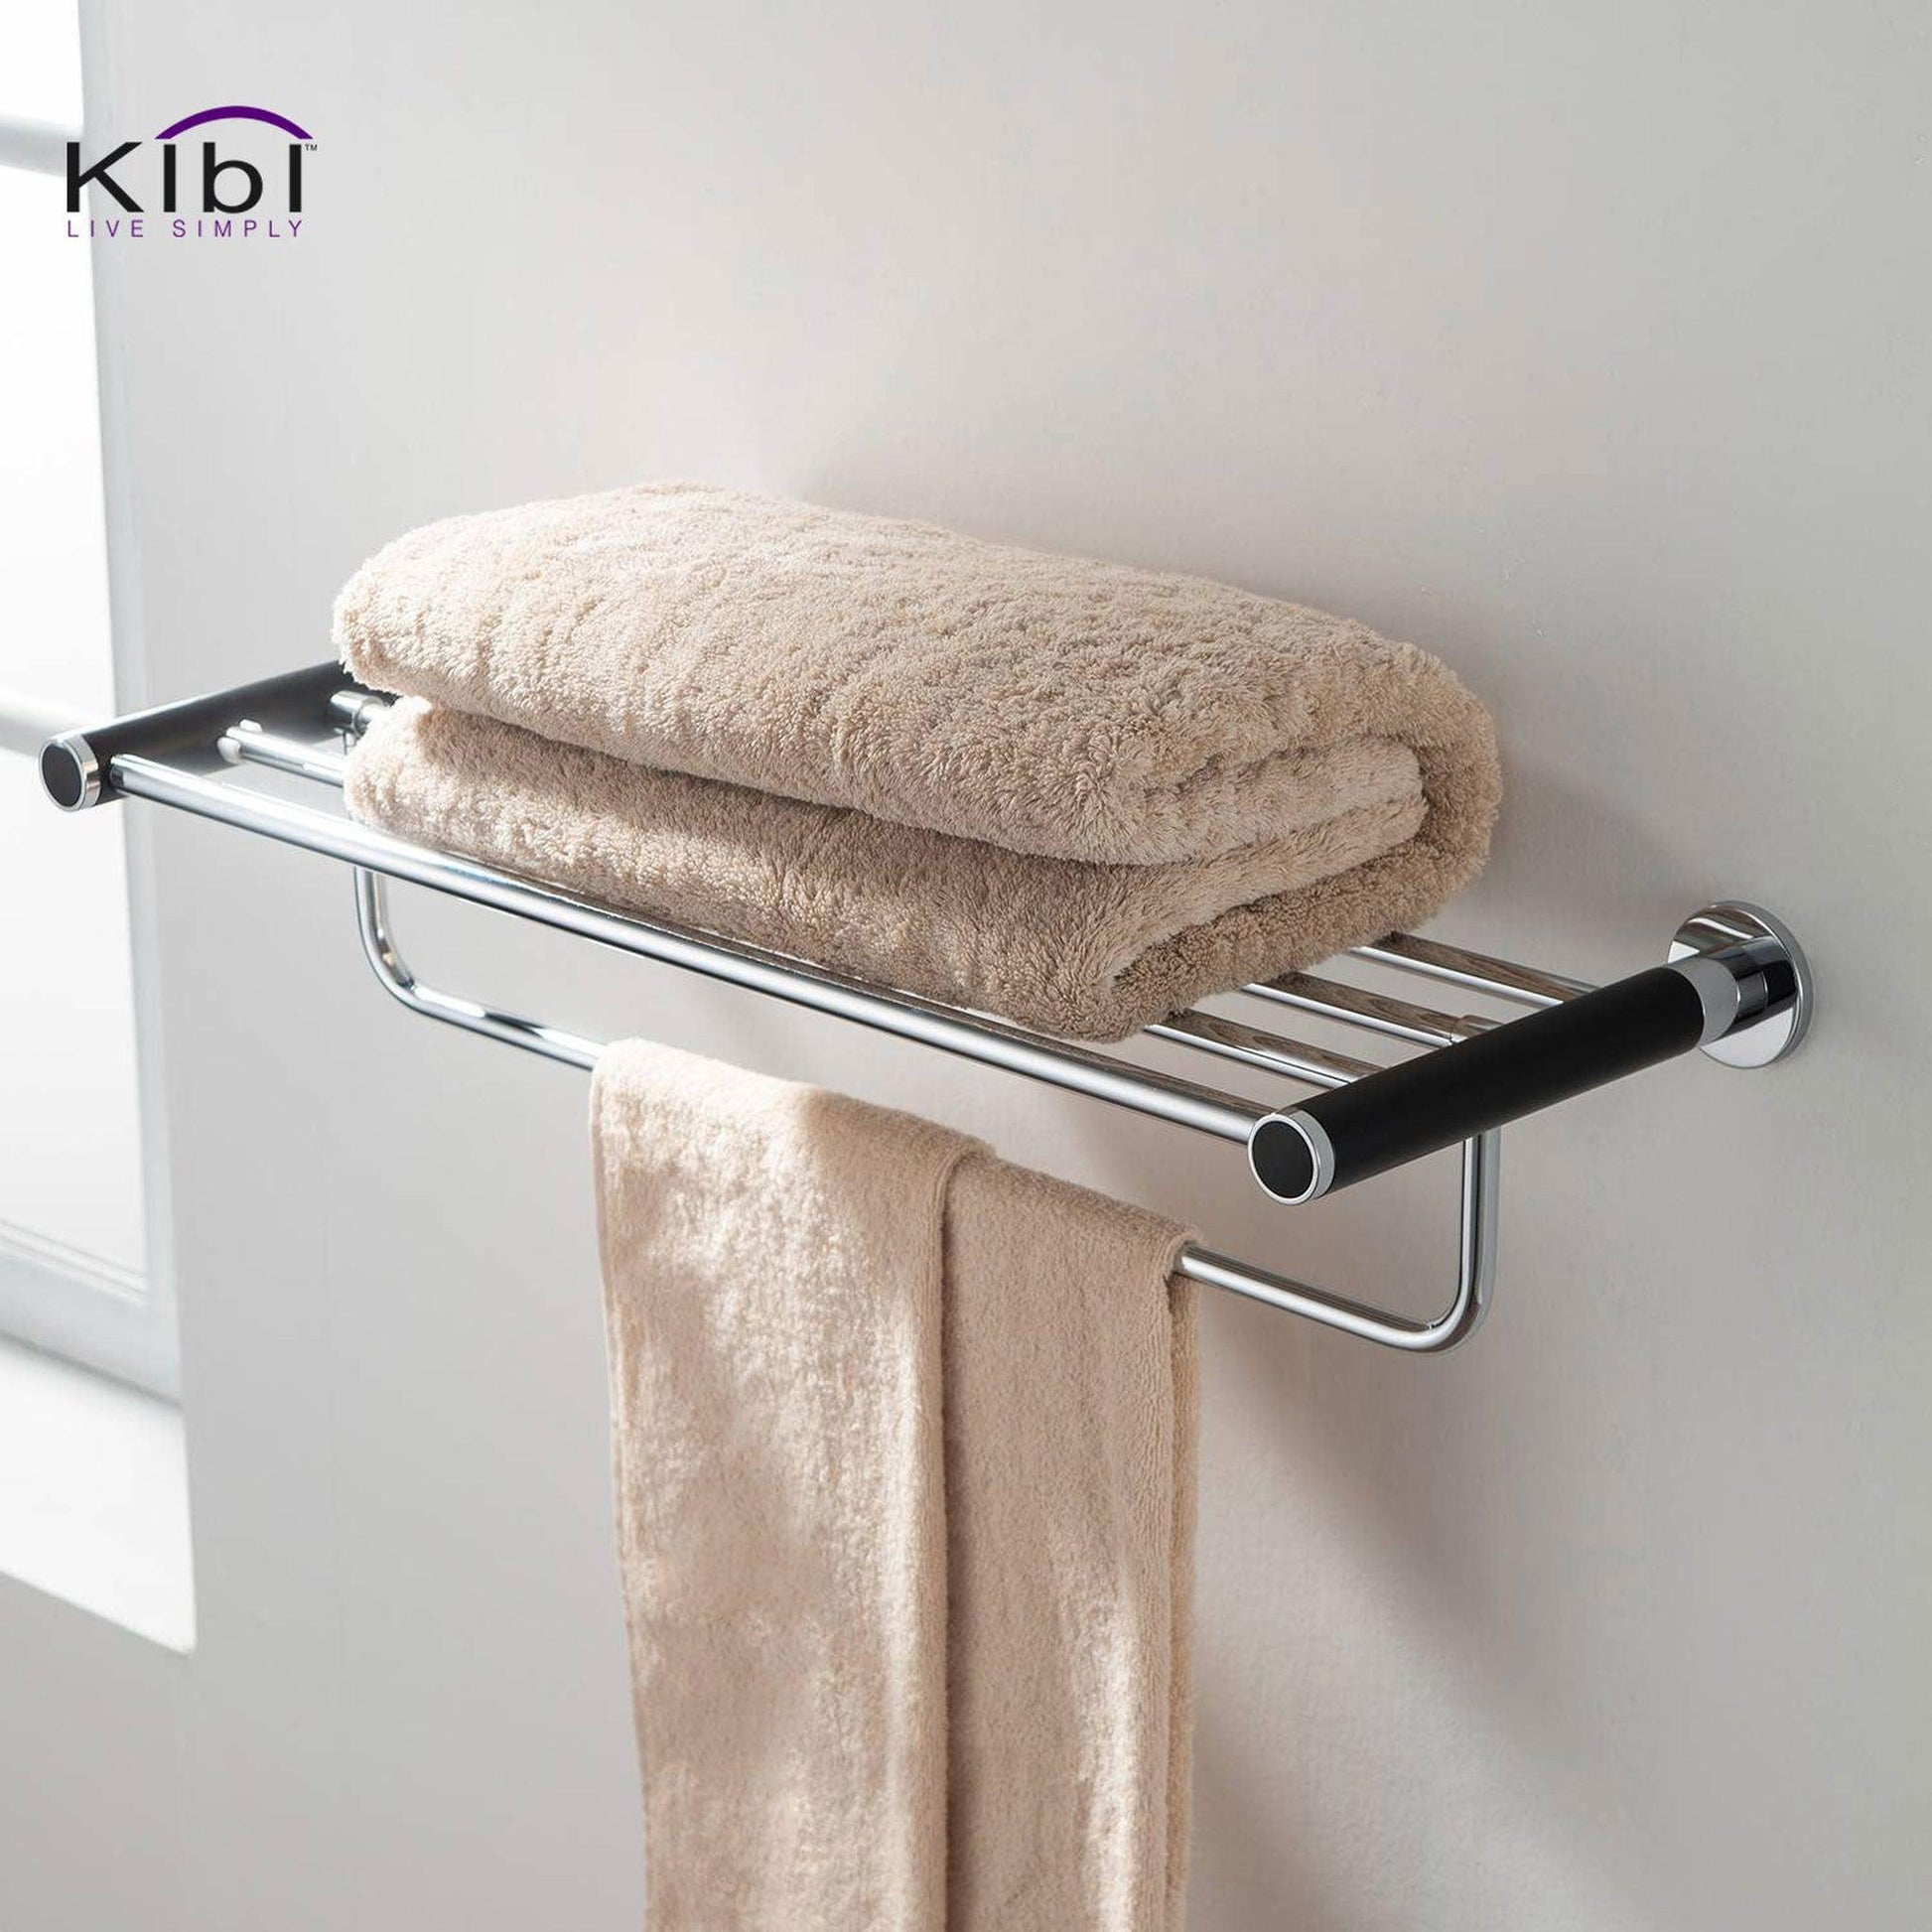 KIBI Abaco Towel Rack in Chrome Black Finish